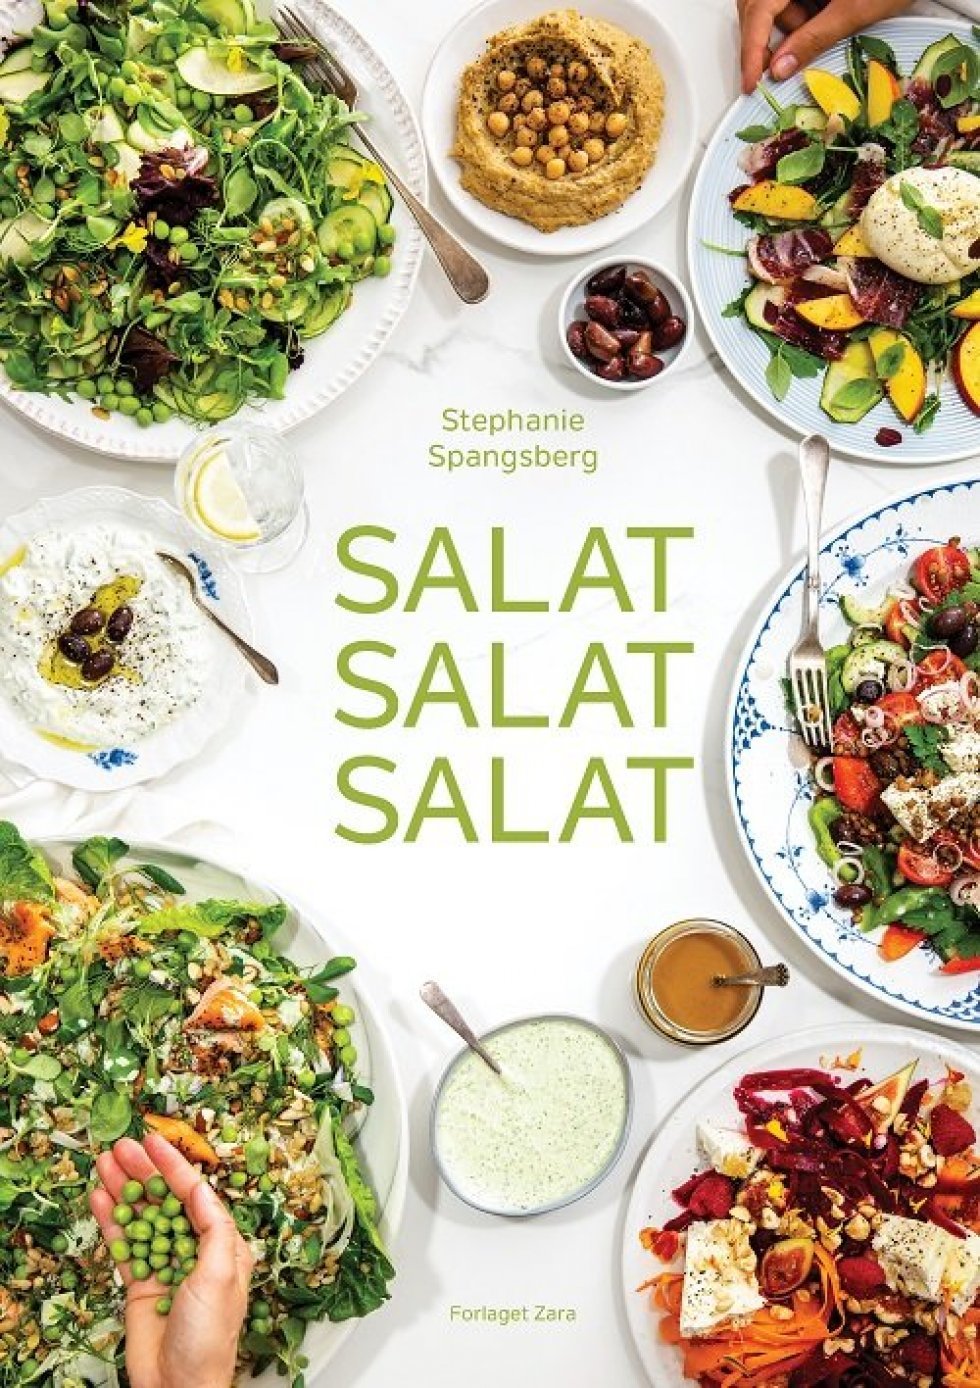 Salat Salat Salat: Ny kogebog hylder salaten som både tilbehør og hovedret